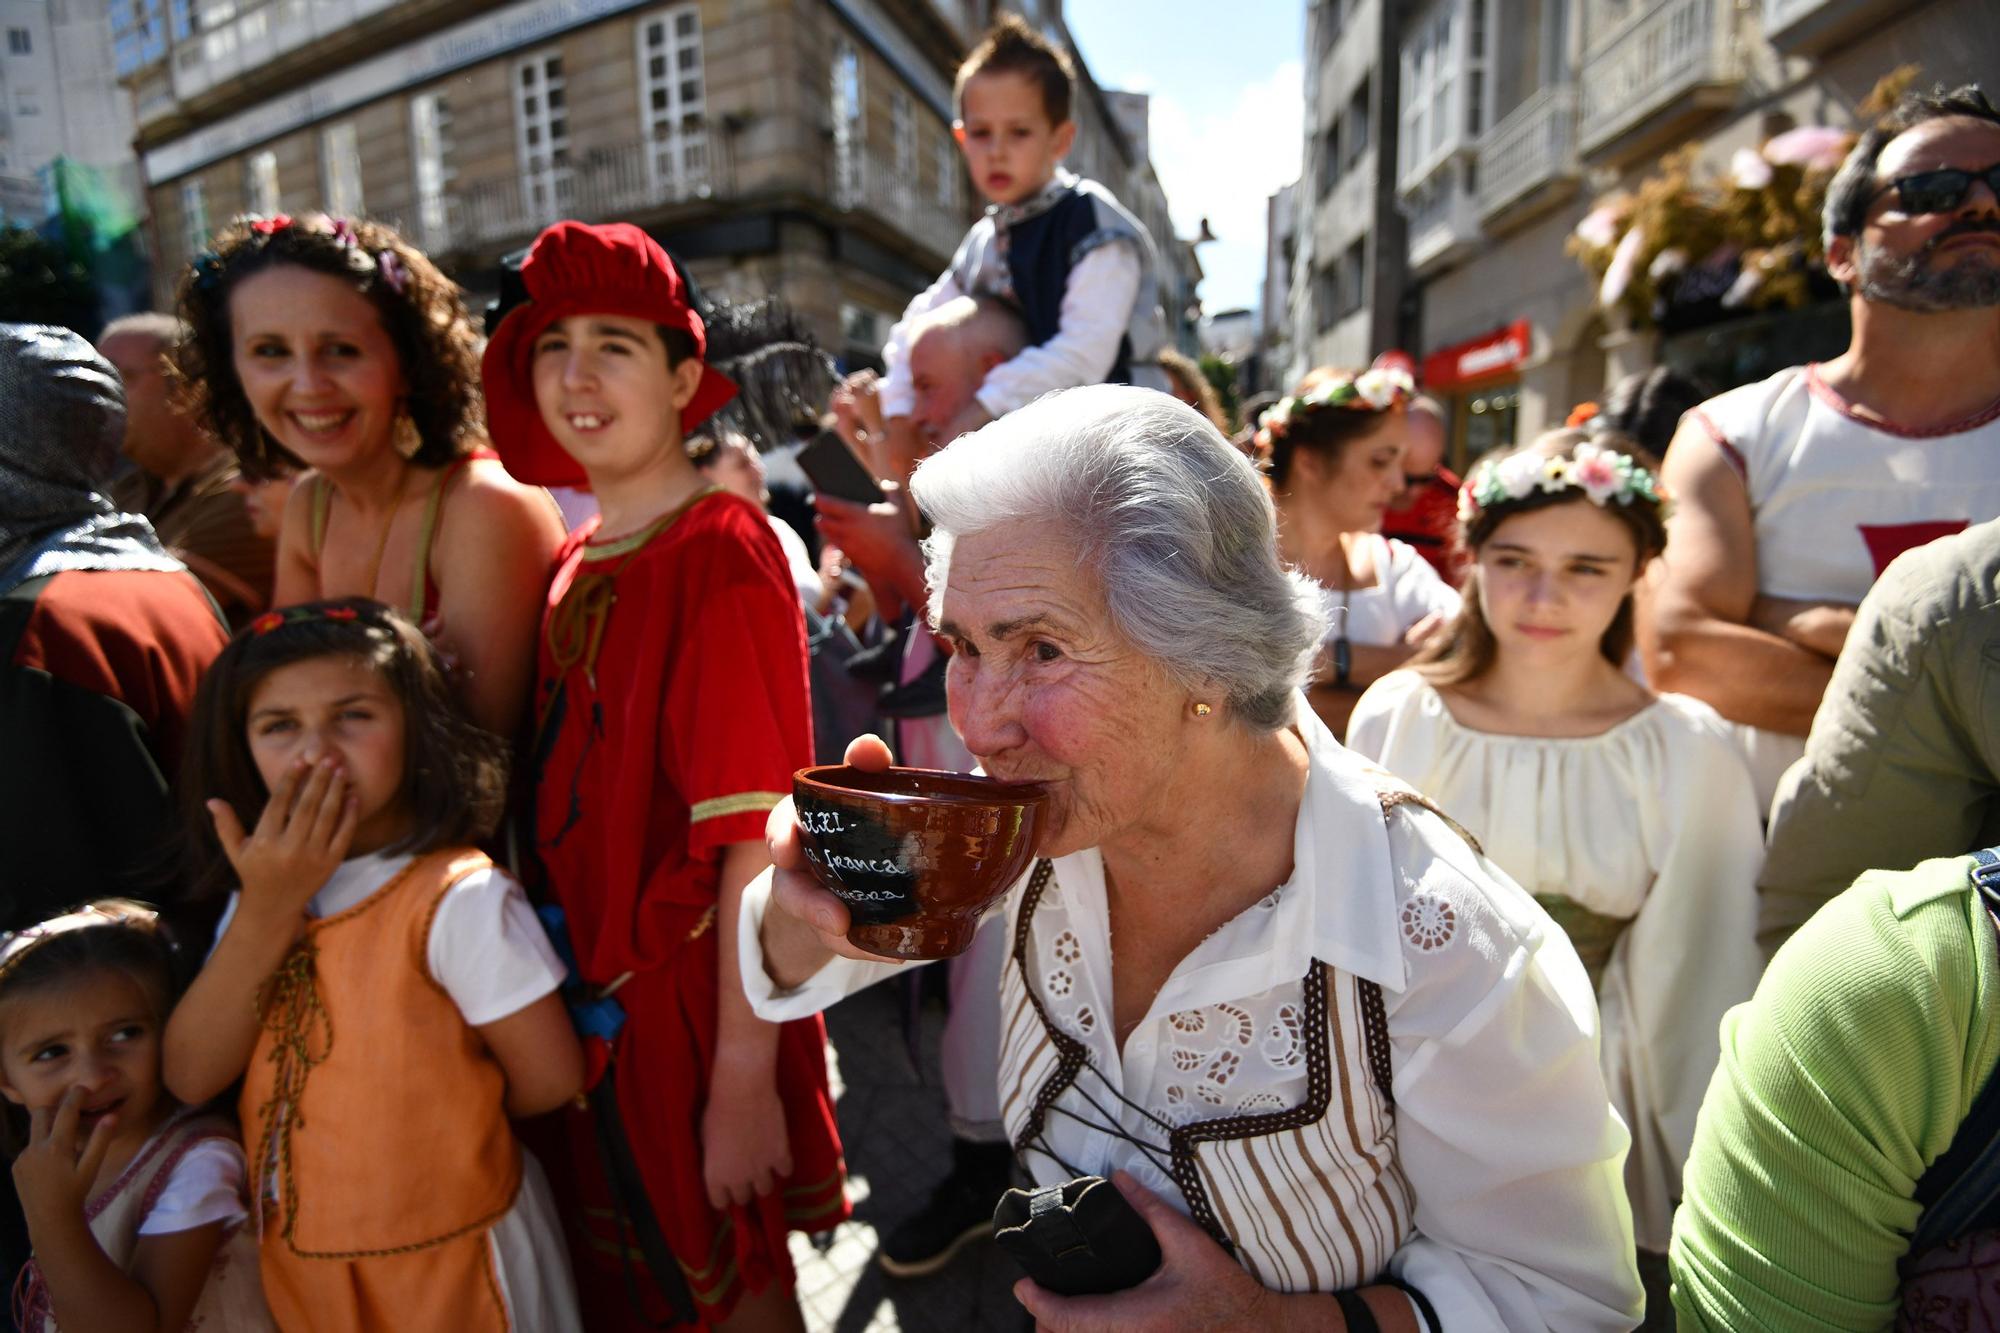 Cortesanos, bufones, damas y caballeros celebran el retorno de su señor: la Feira Franca anima Pontevedra